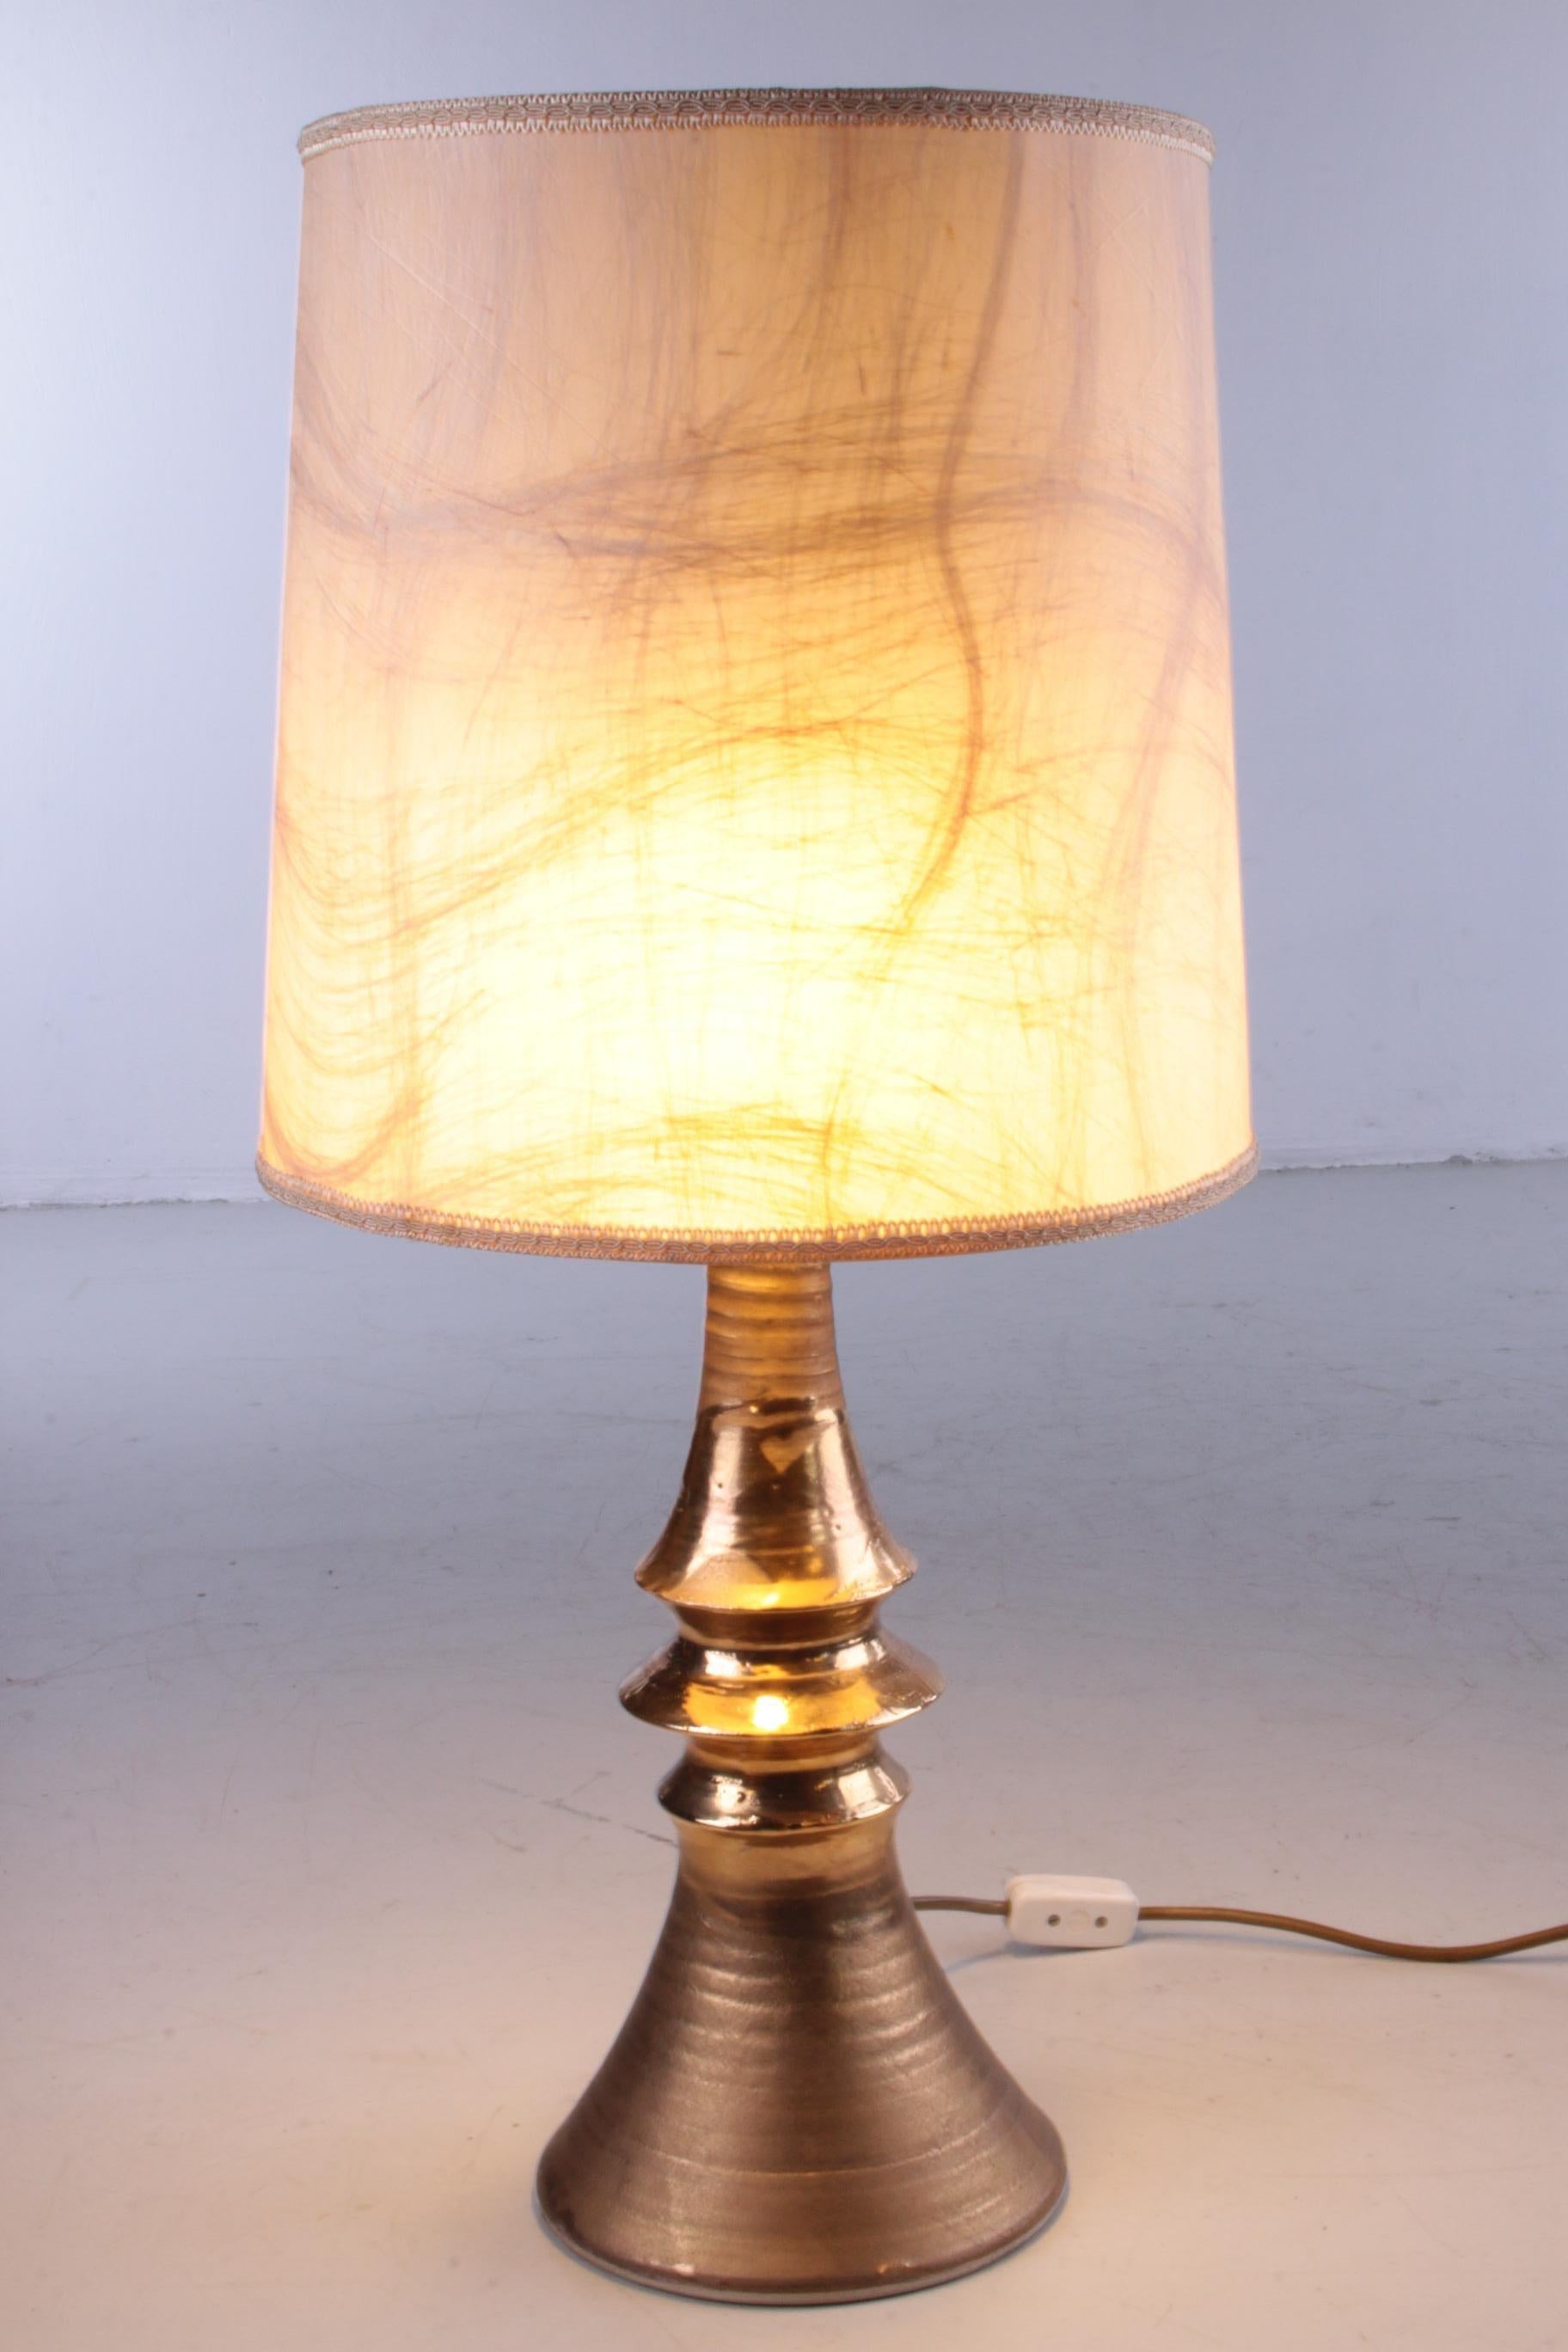 Il s'agit d'une magnifique lampe de table dorée en céramique fabriquée en Allemagne.

Cette lampe s'intègre parfaitement dans un décor moderne ou Hollywood Regency.

Il y a un interrupteur sur le câble avec la fiche

Ce capot est d'origine, mais